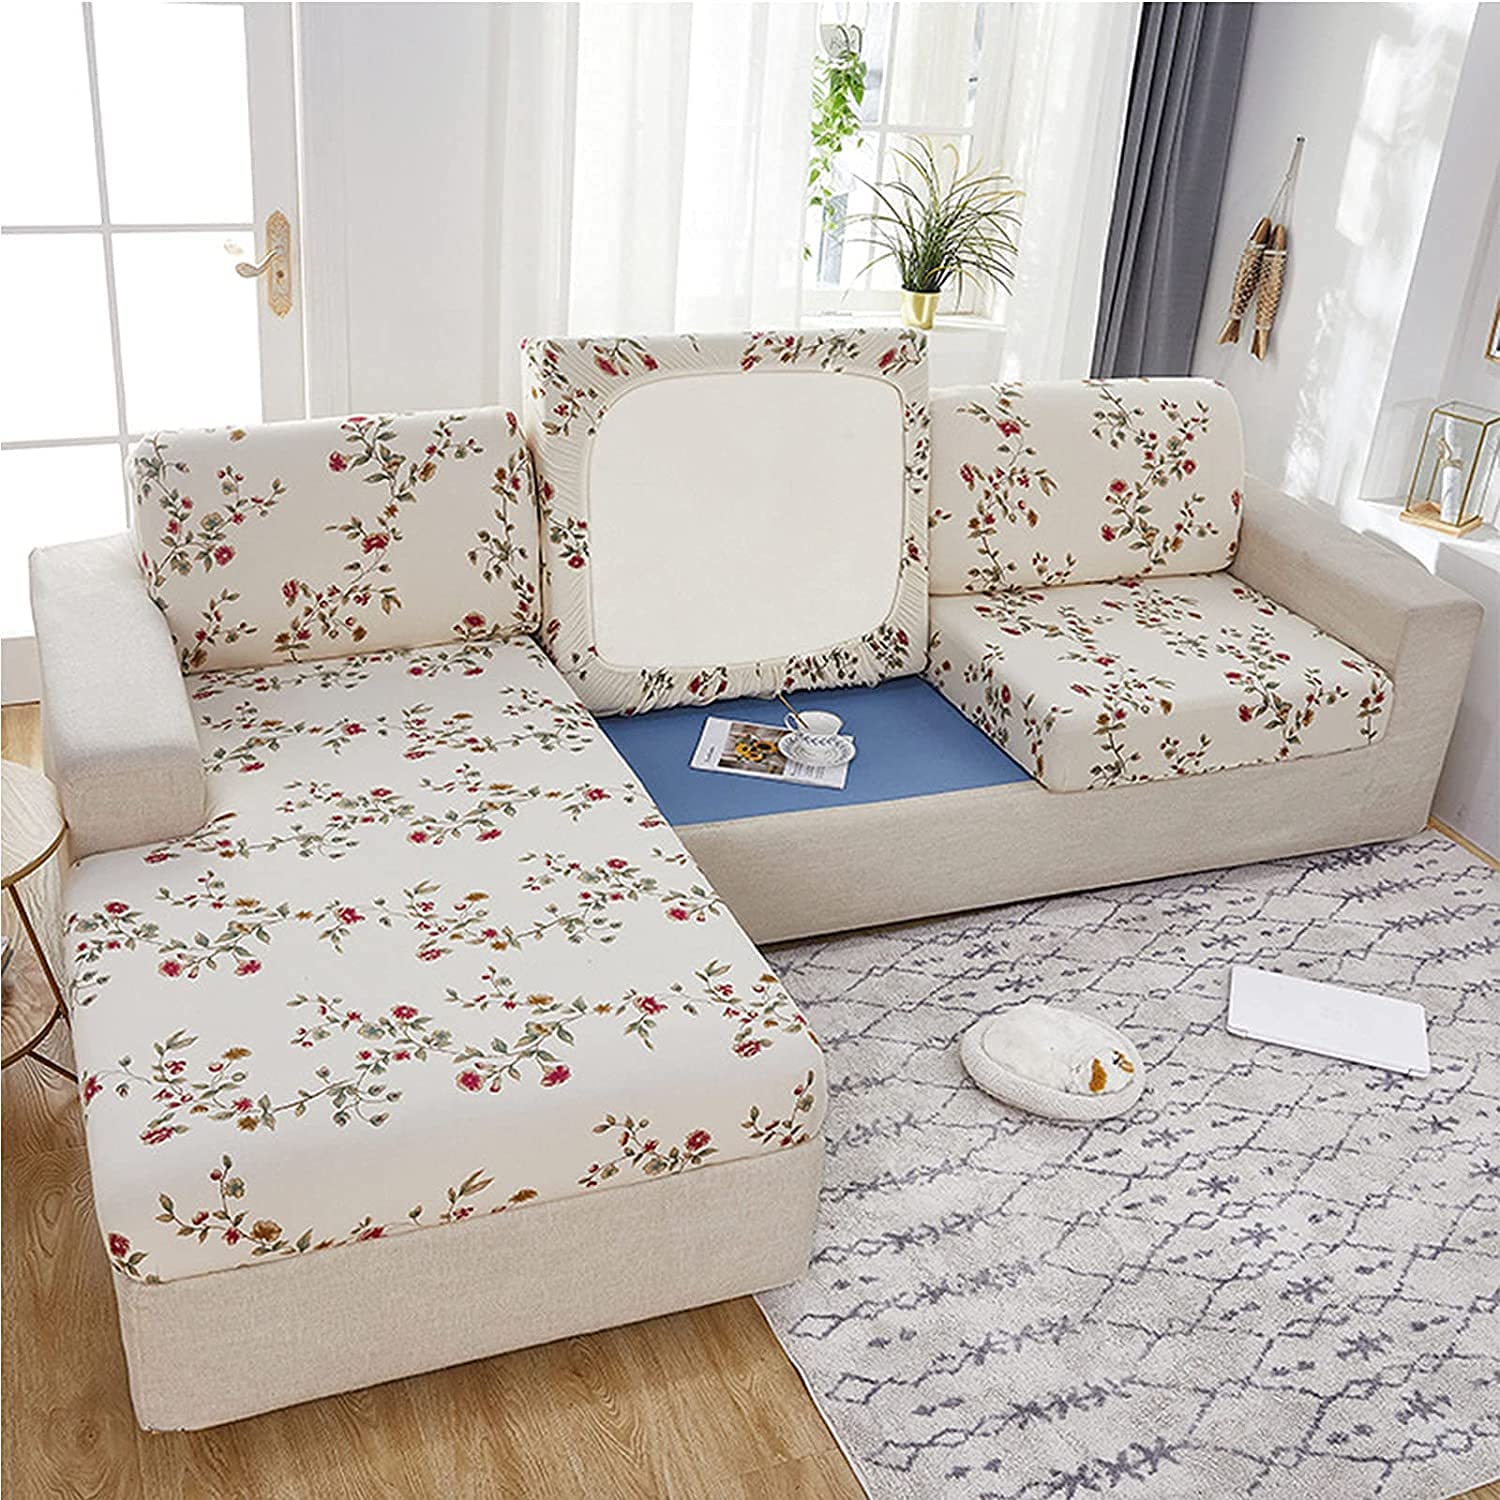 Muốn tạo điểm nhấn cho phòng khách của bạn? Thảm phủ sofa mang đến sự sang trọng và tinh tế cho bất kỳ không gian nào. Cùng xem hình ảnh liên quan để tìm kiếm những mẫu thảm phủ sofa đẹp và độc đáo để tôn lên nét độc đáo cho căn phòng của bạn.